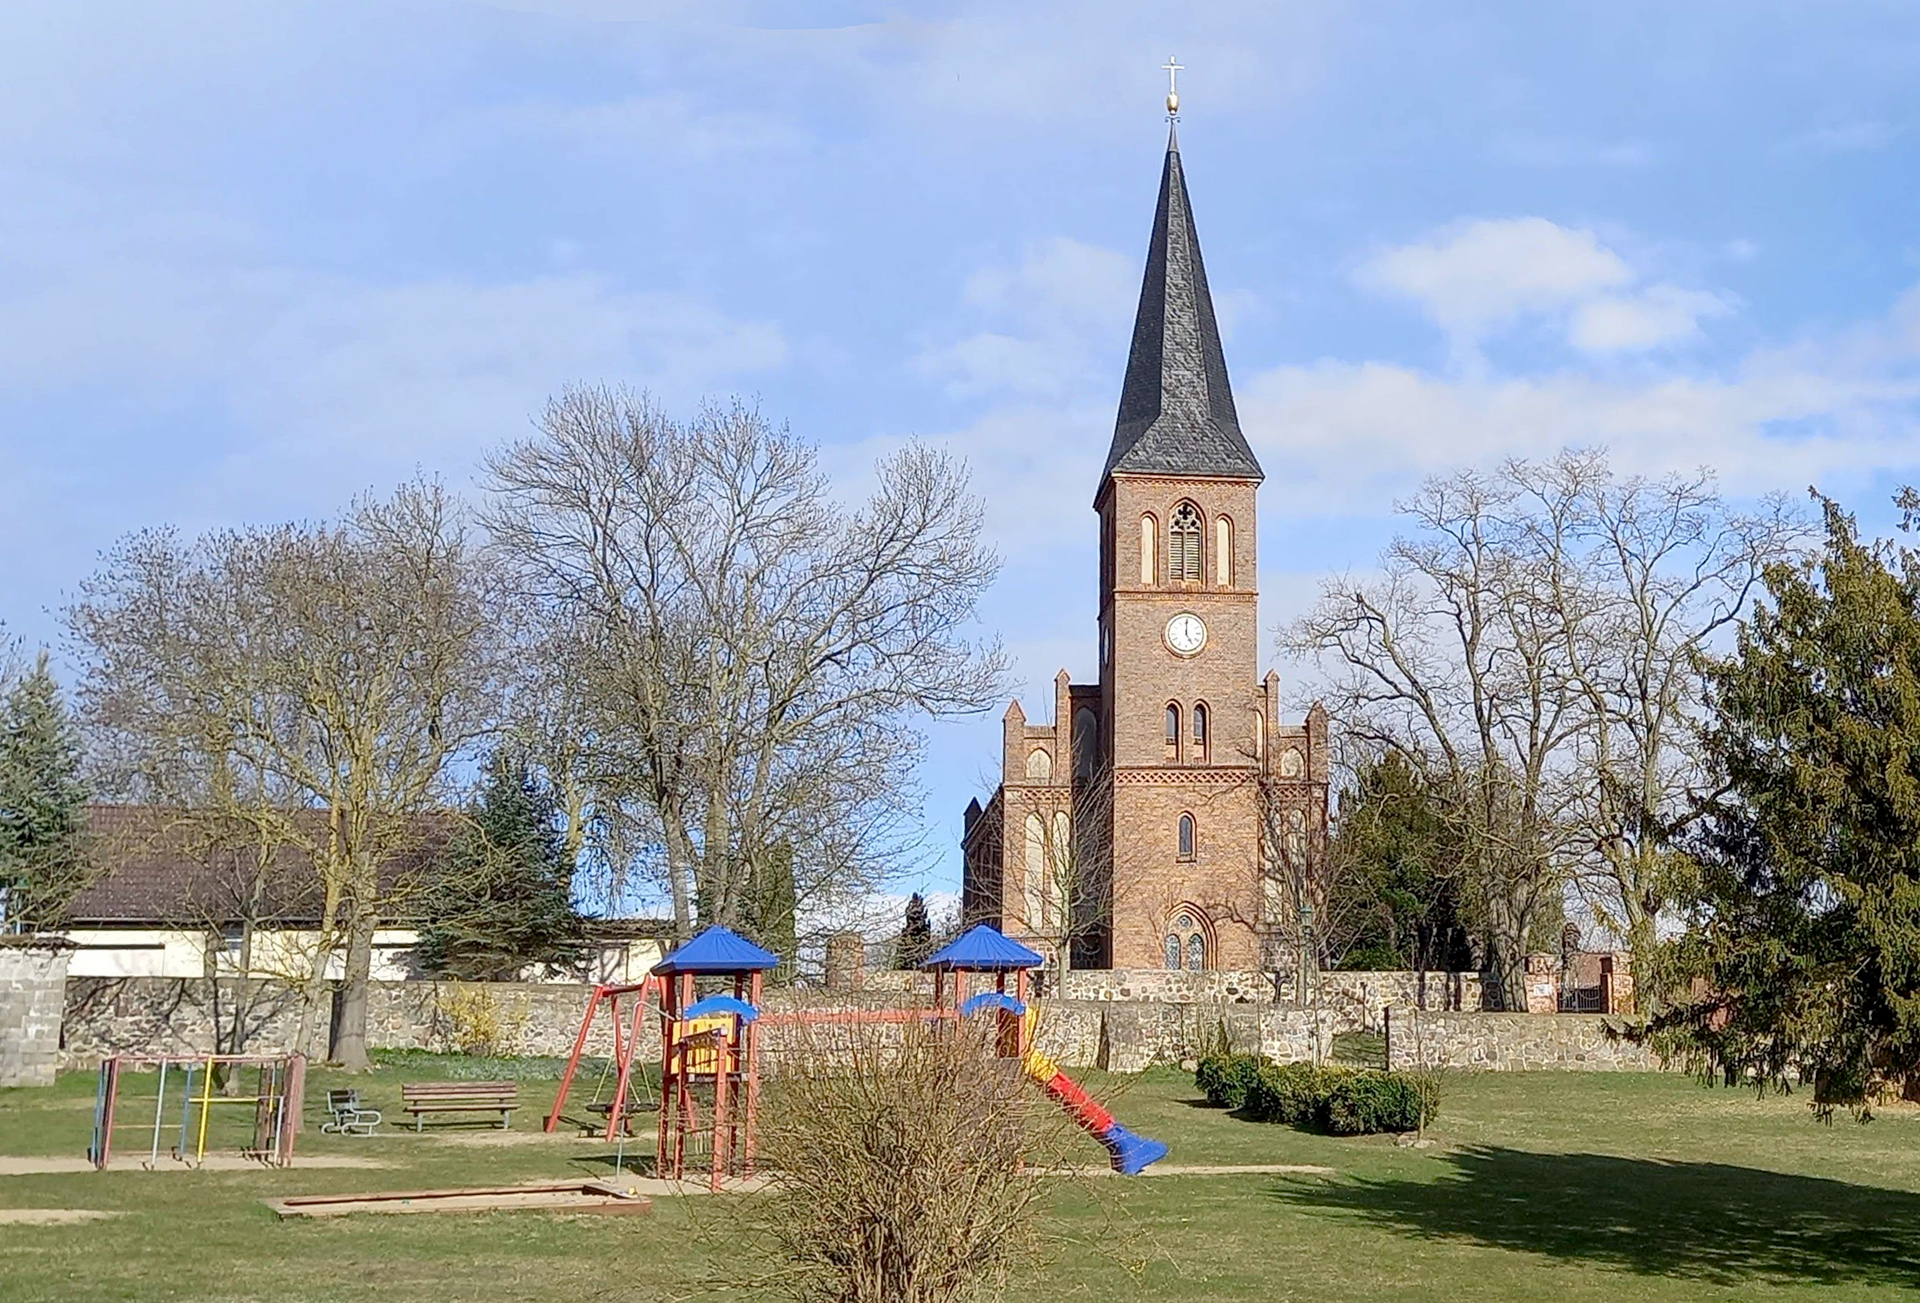 Foto: Spielplatz vor der Kirche